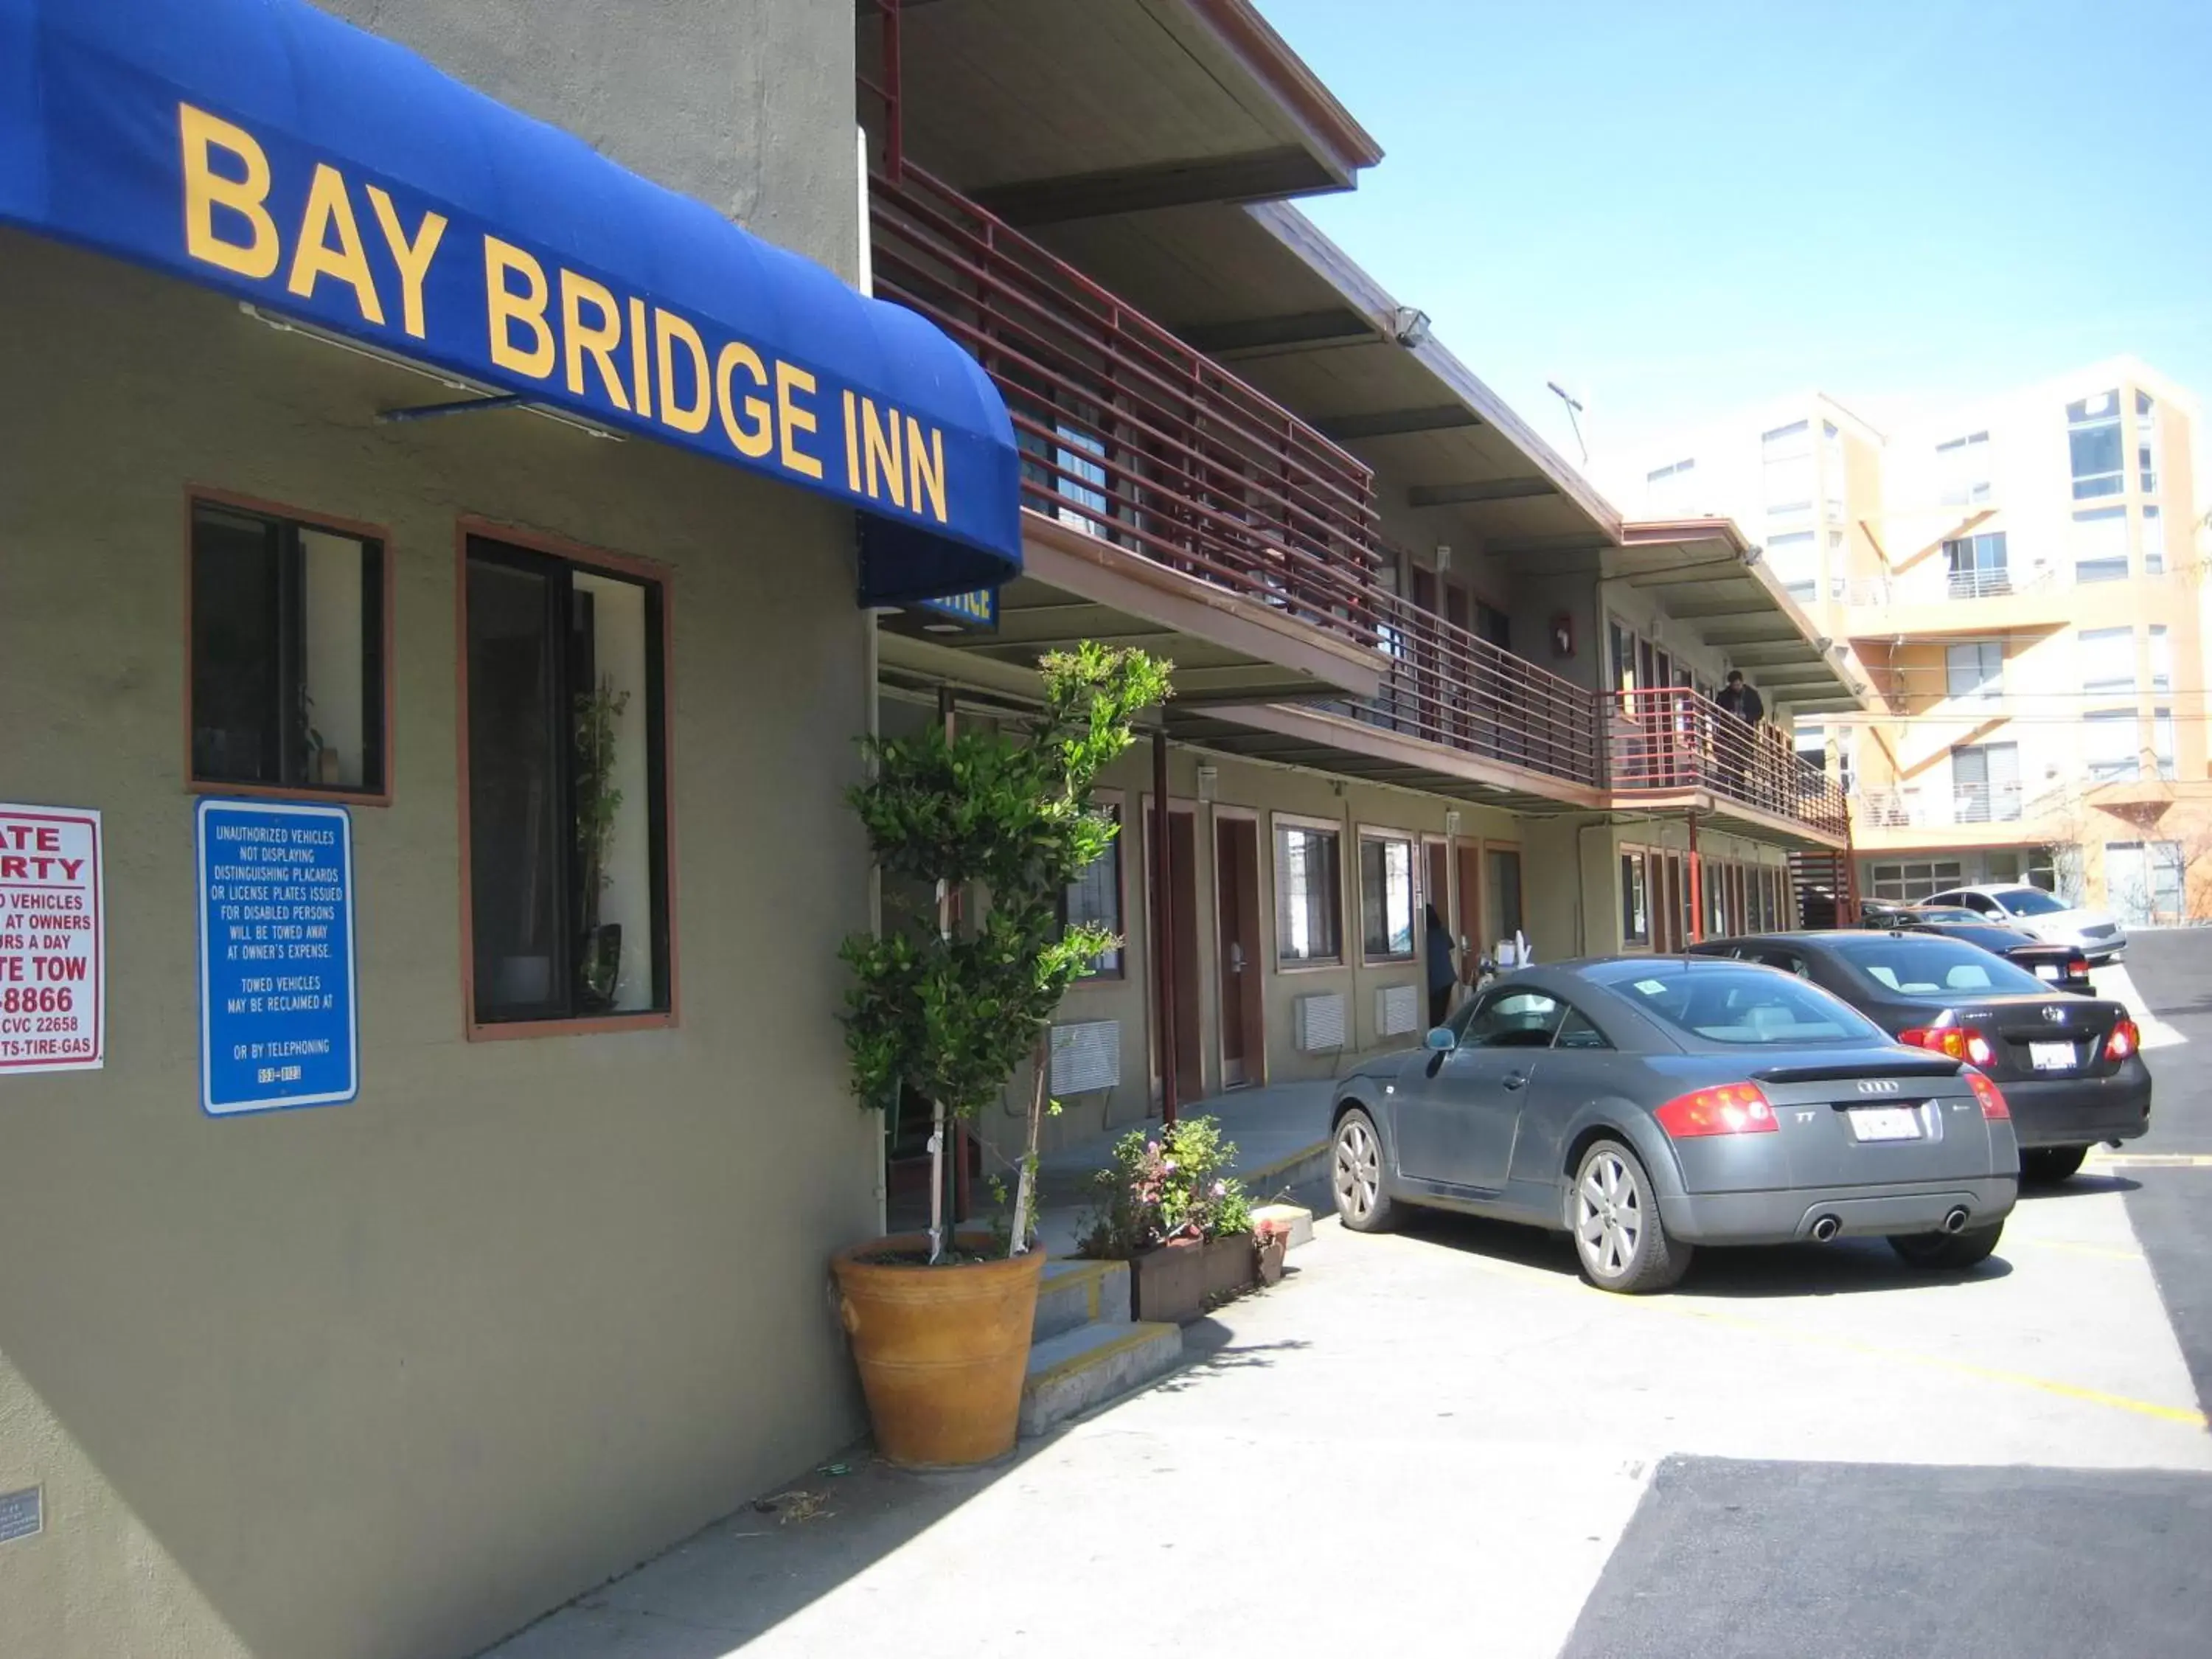 Facade/entrance, Property Building in Bay Bridge Inn San Francisco